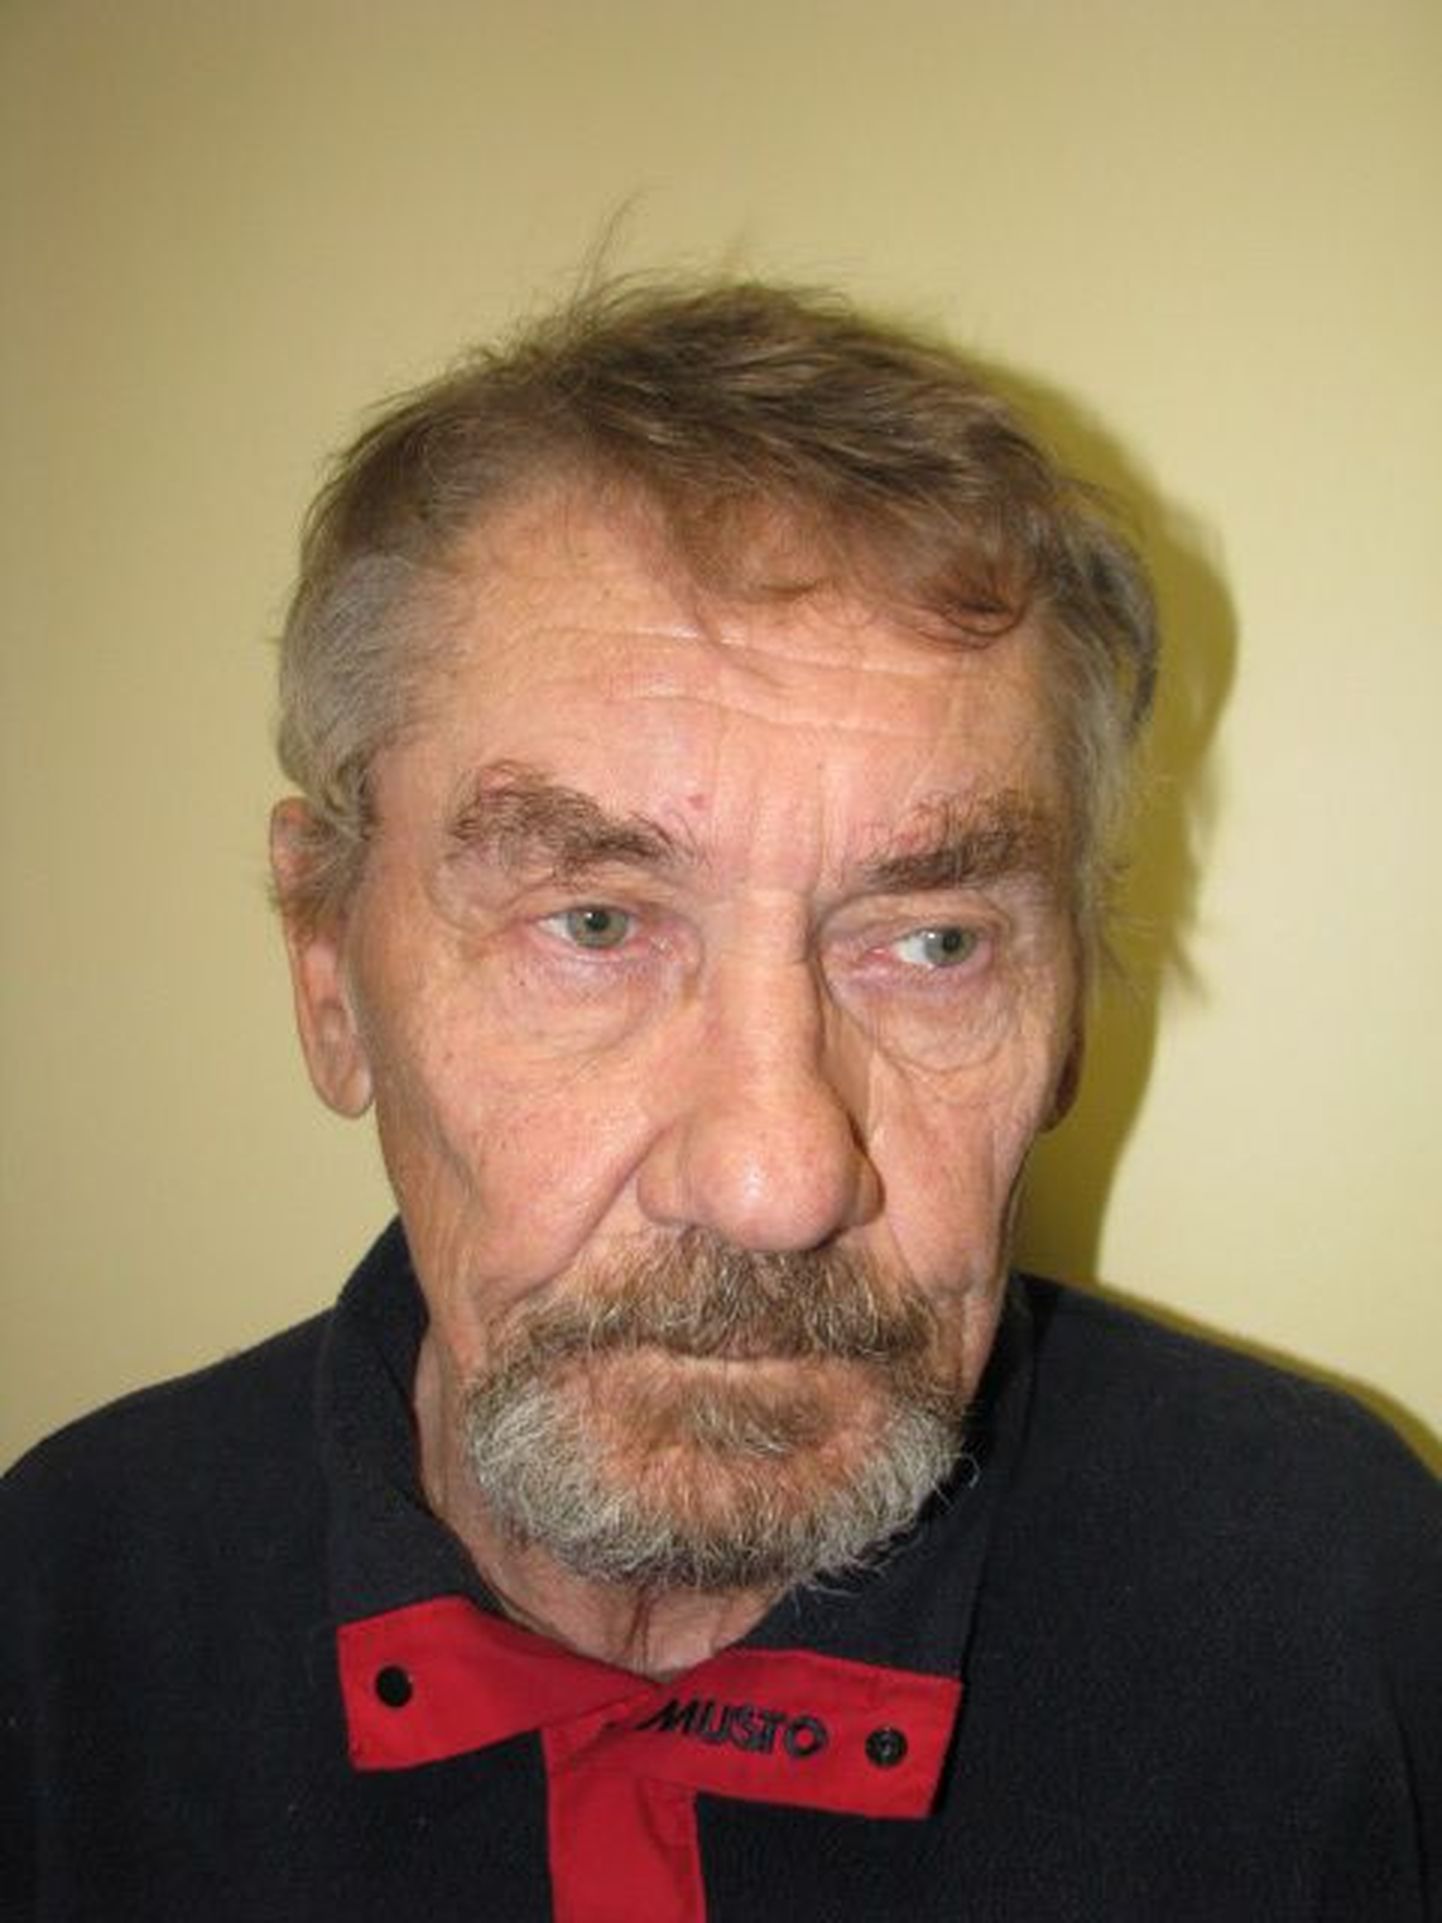 Lääne prefektuuri kriminaalbüroo pidas 26. aprillil kinni 72-aastase Vladimiri, keda kahtlustatakse seksuaalkuritegudes lapseealiste suhtes.